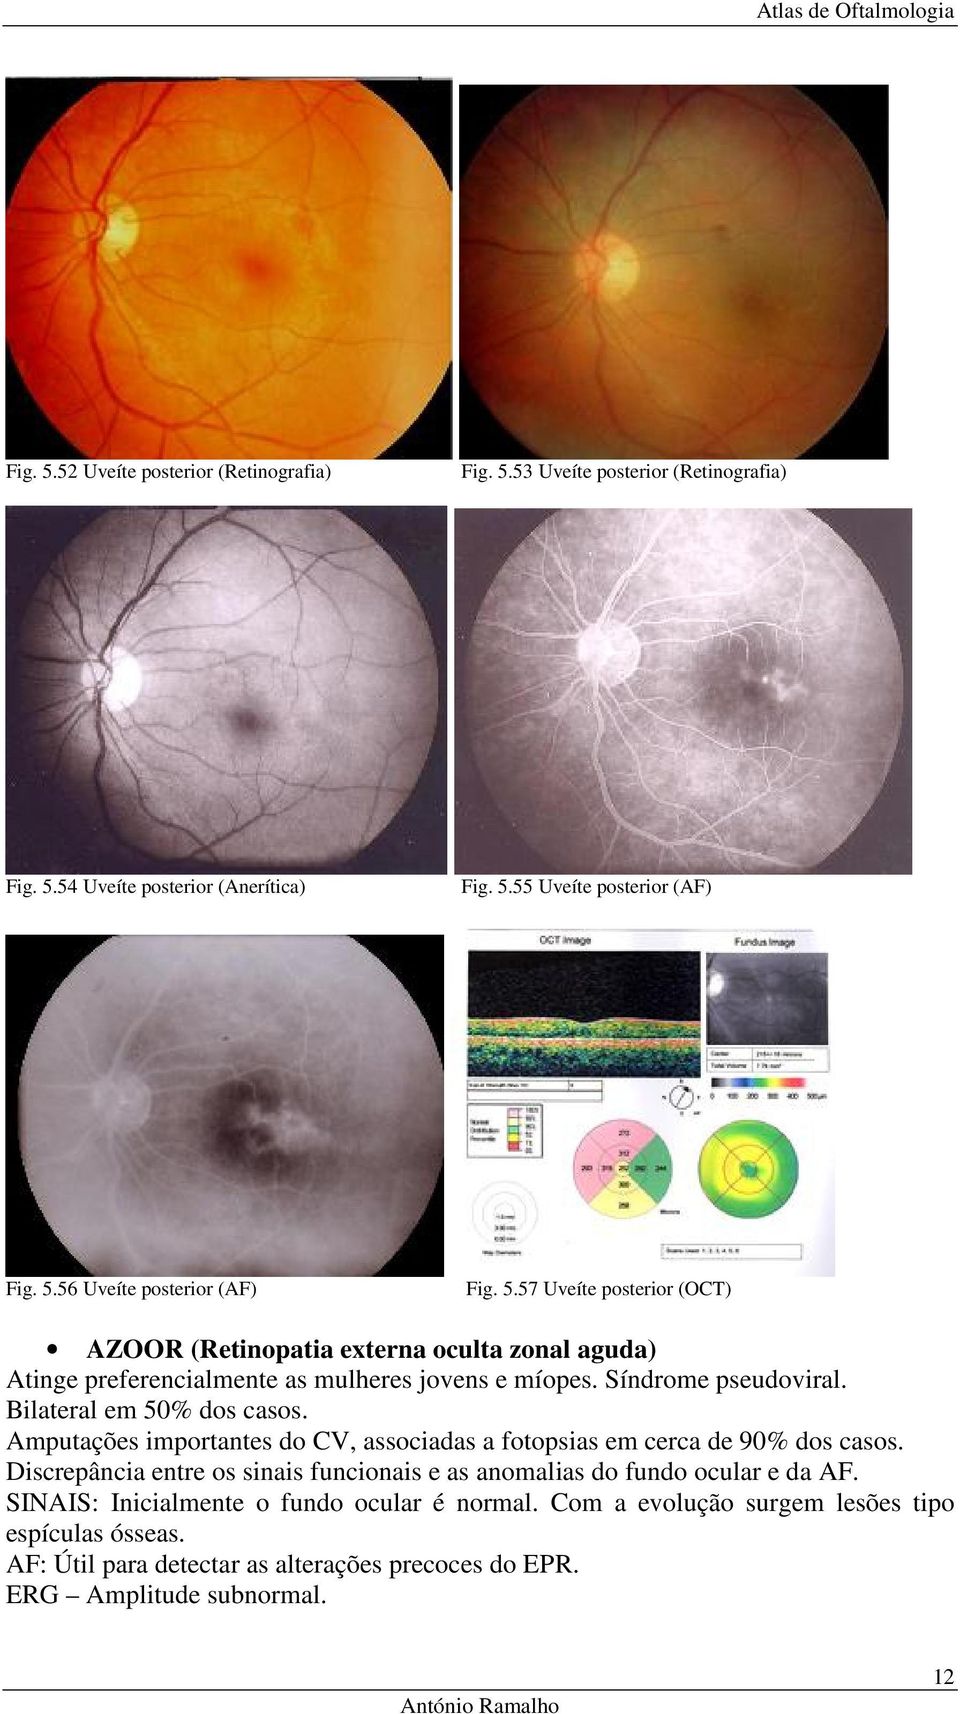 Amputações importantes do CV, associadas a fotopsias em cerca de 90% dos casos. Discrepância entre os sinais funcionais e as anomalias do fundo ocular e da AF.